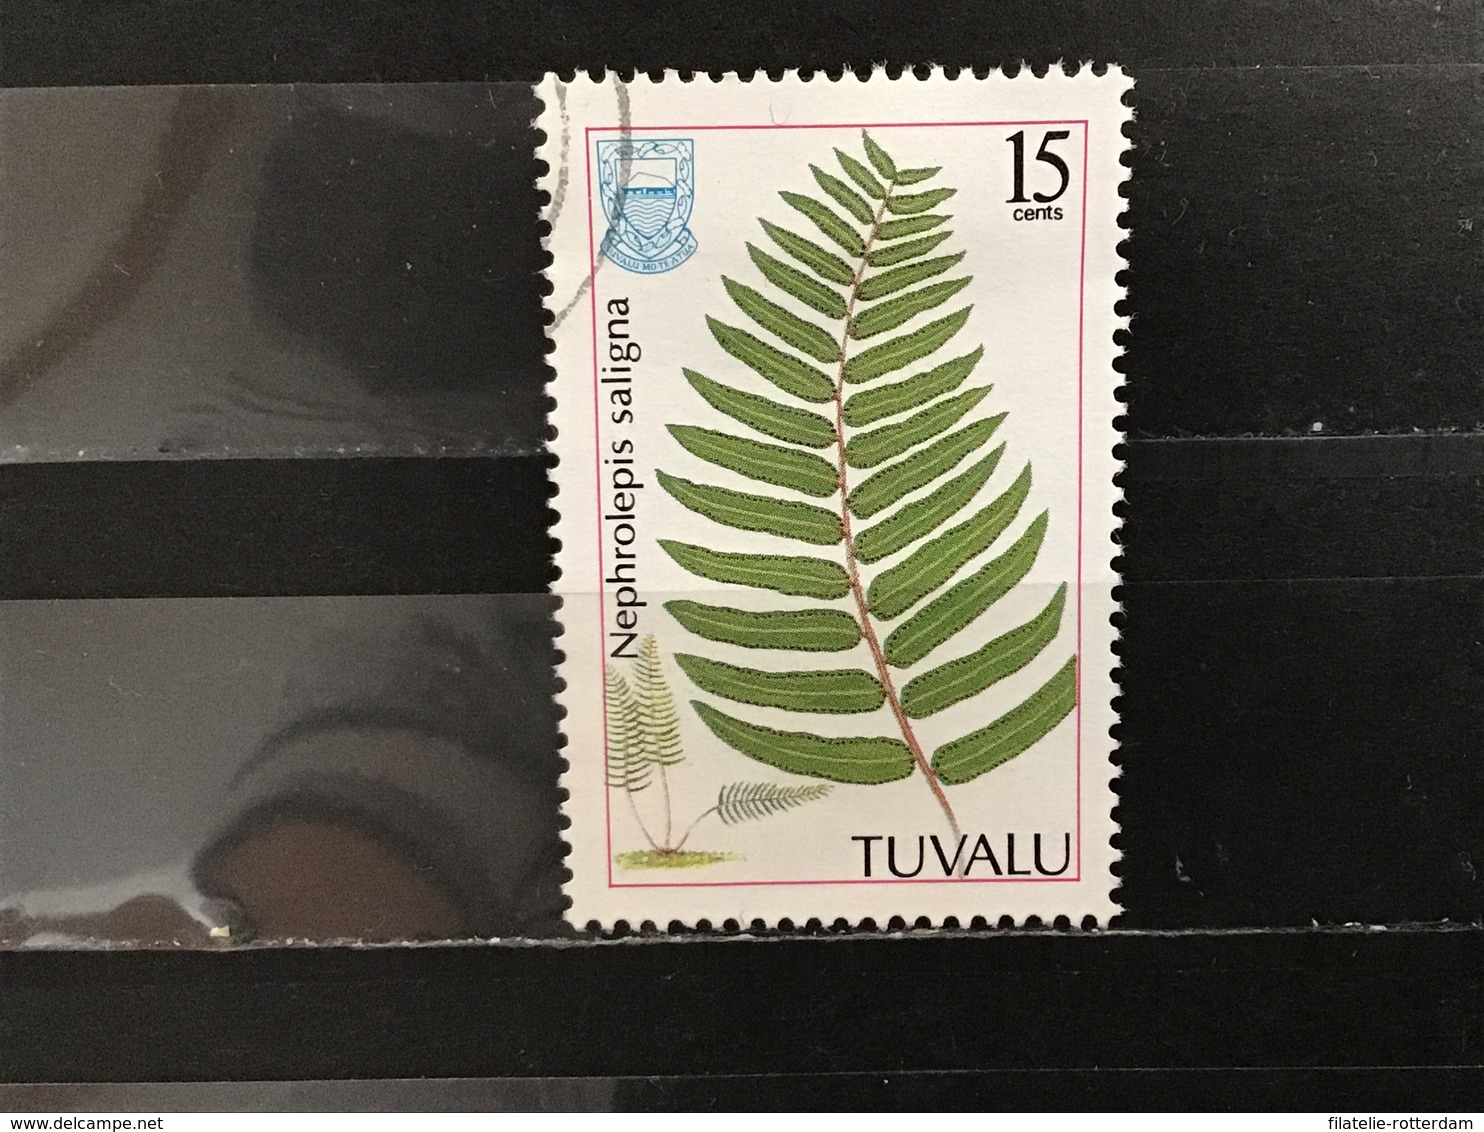 Tuvalu - Varens (15) 1987 - Tuvalu